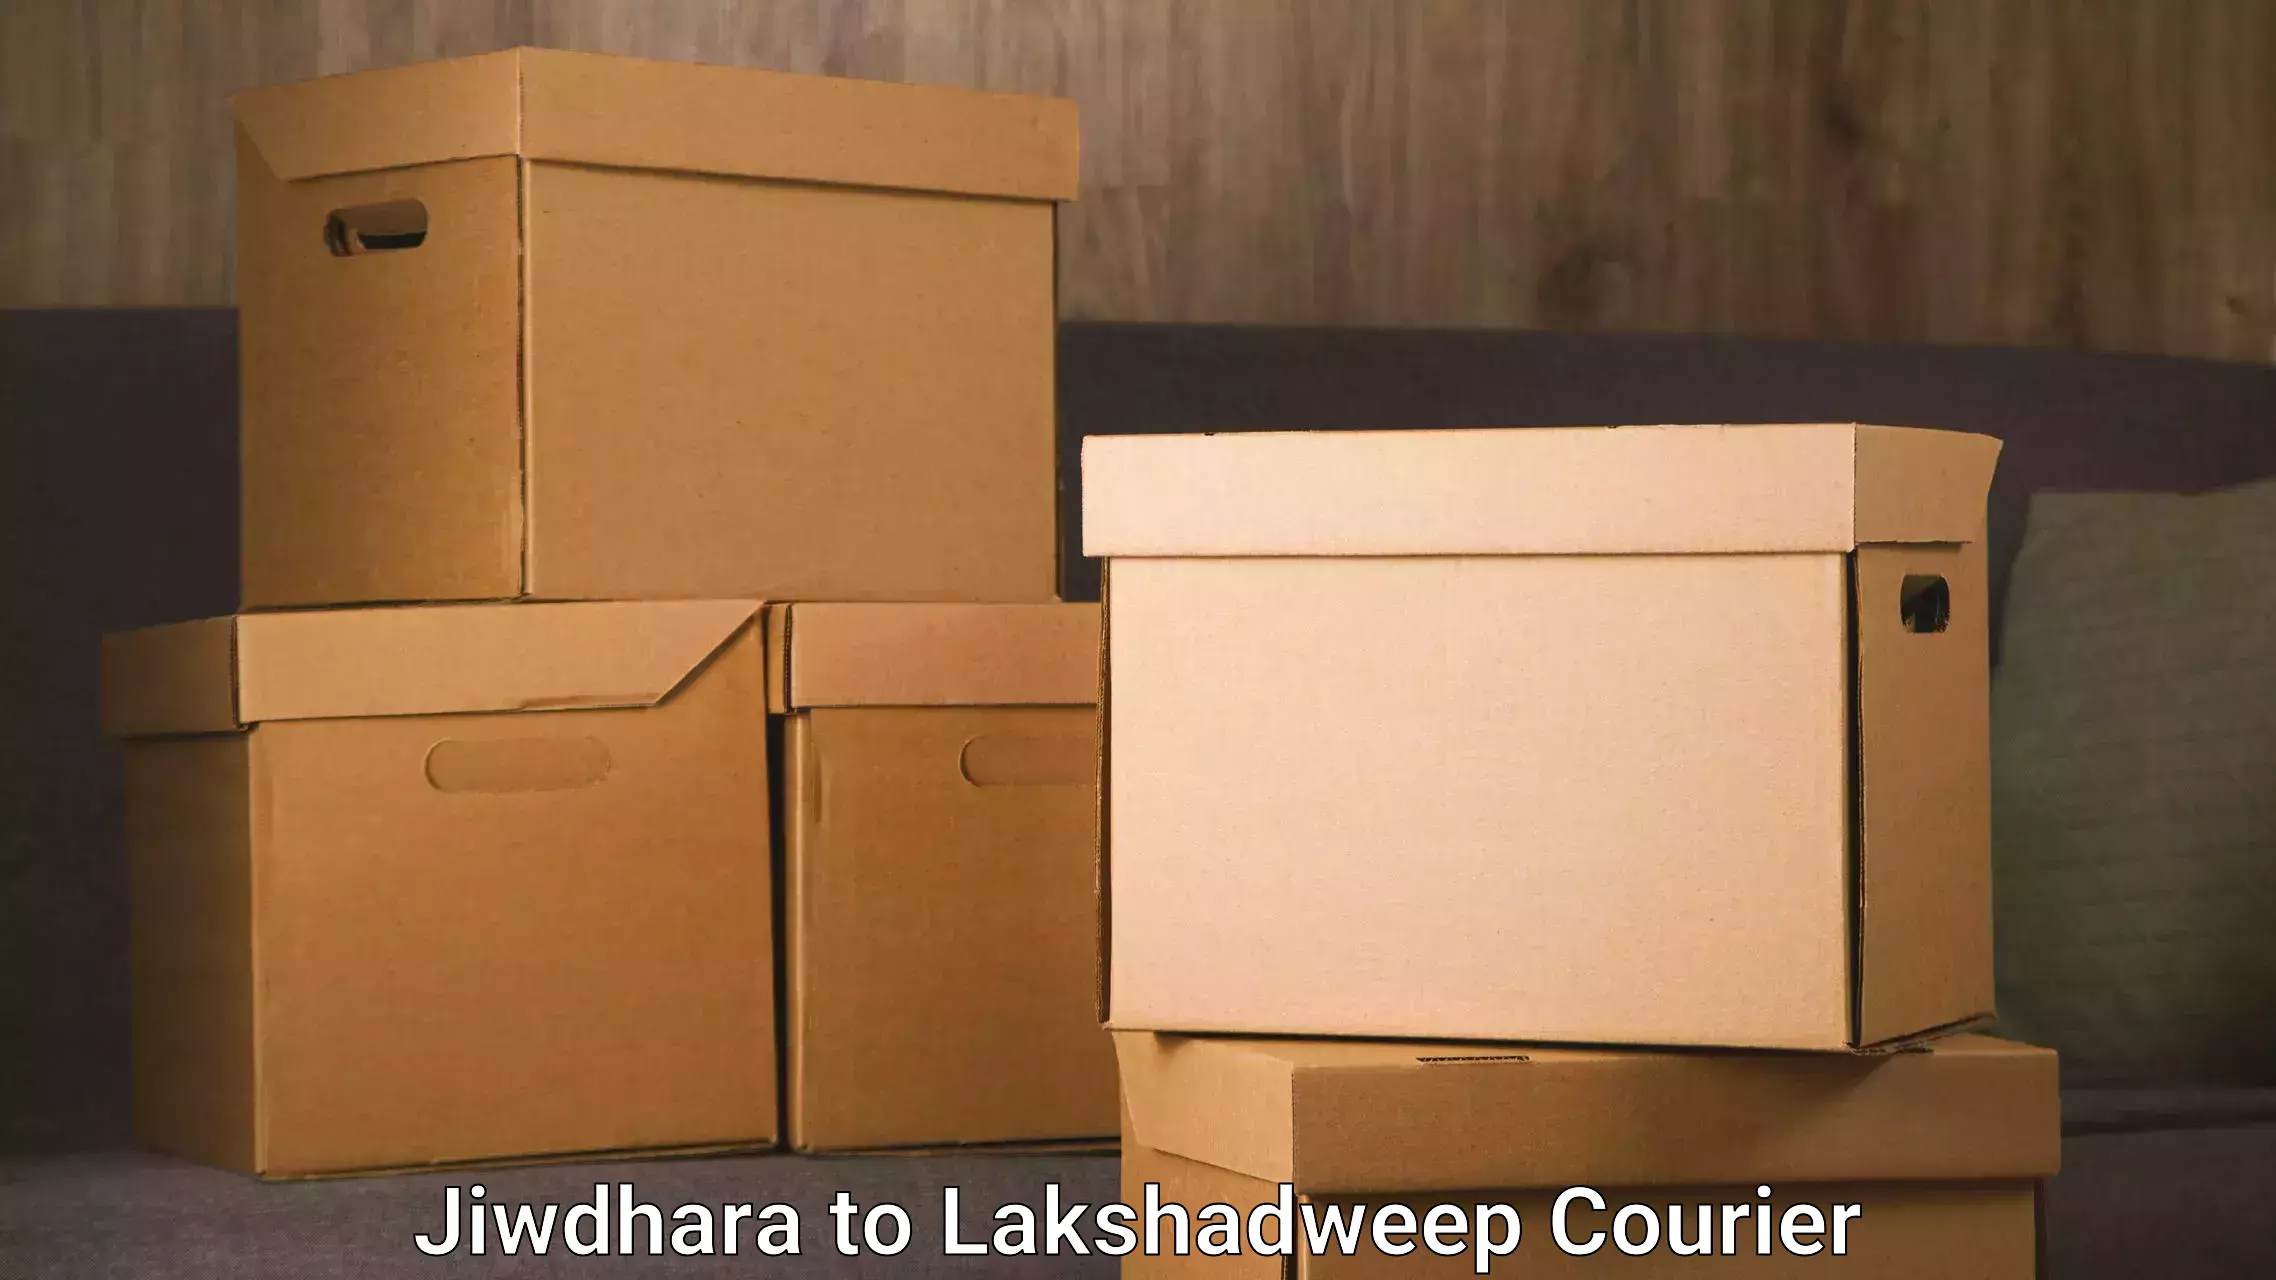 Furniture transport and storage Jiwdhara to Lakshadweep